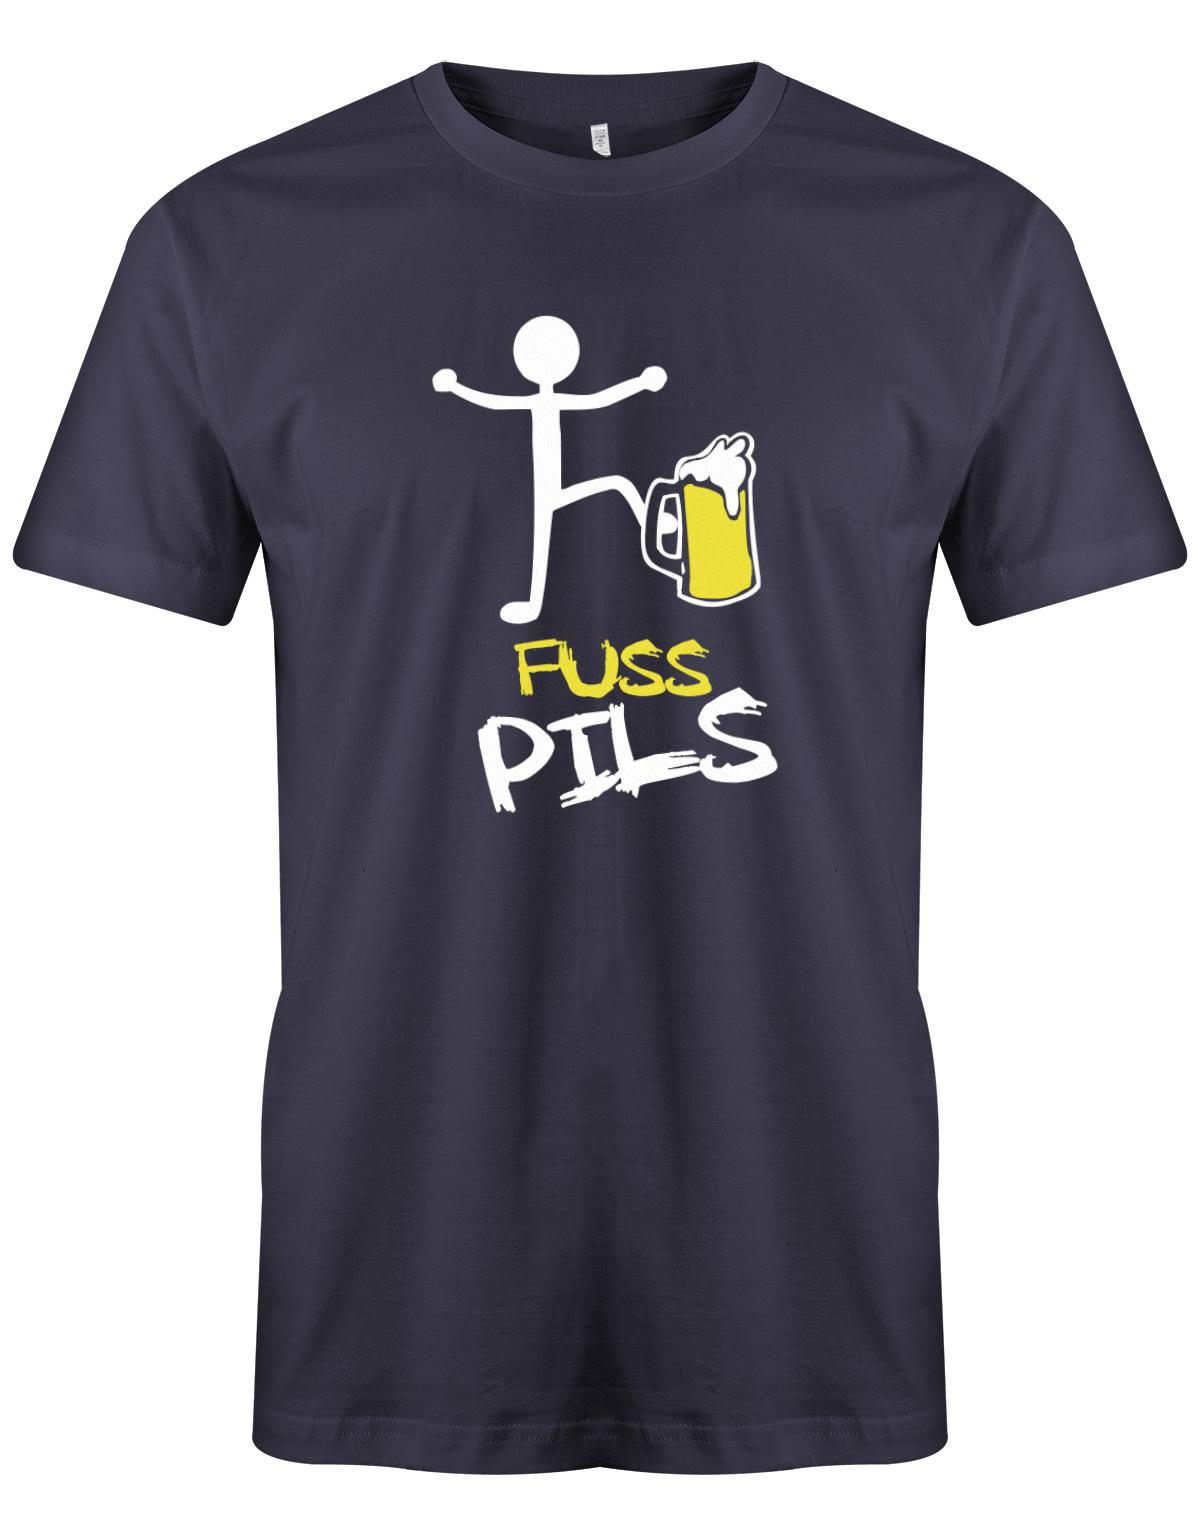 Fusspils-Bier-Herren-Shirt-Navy